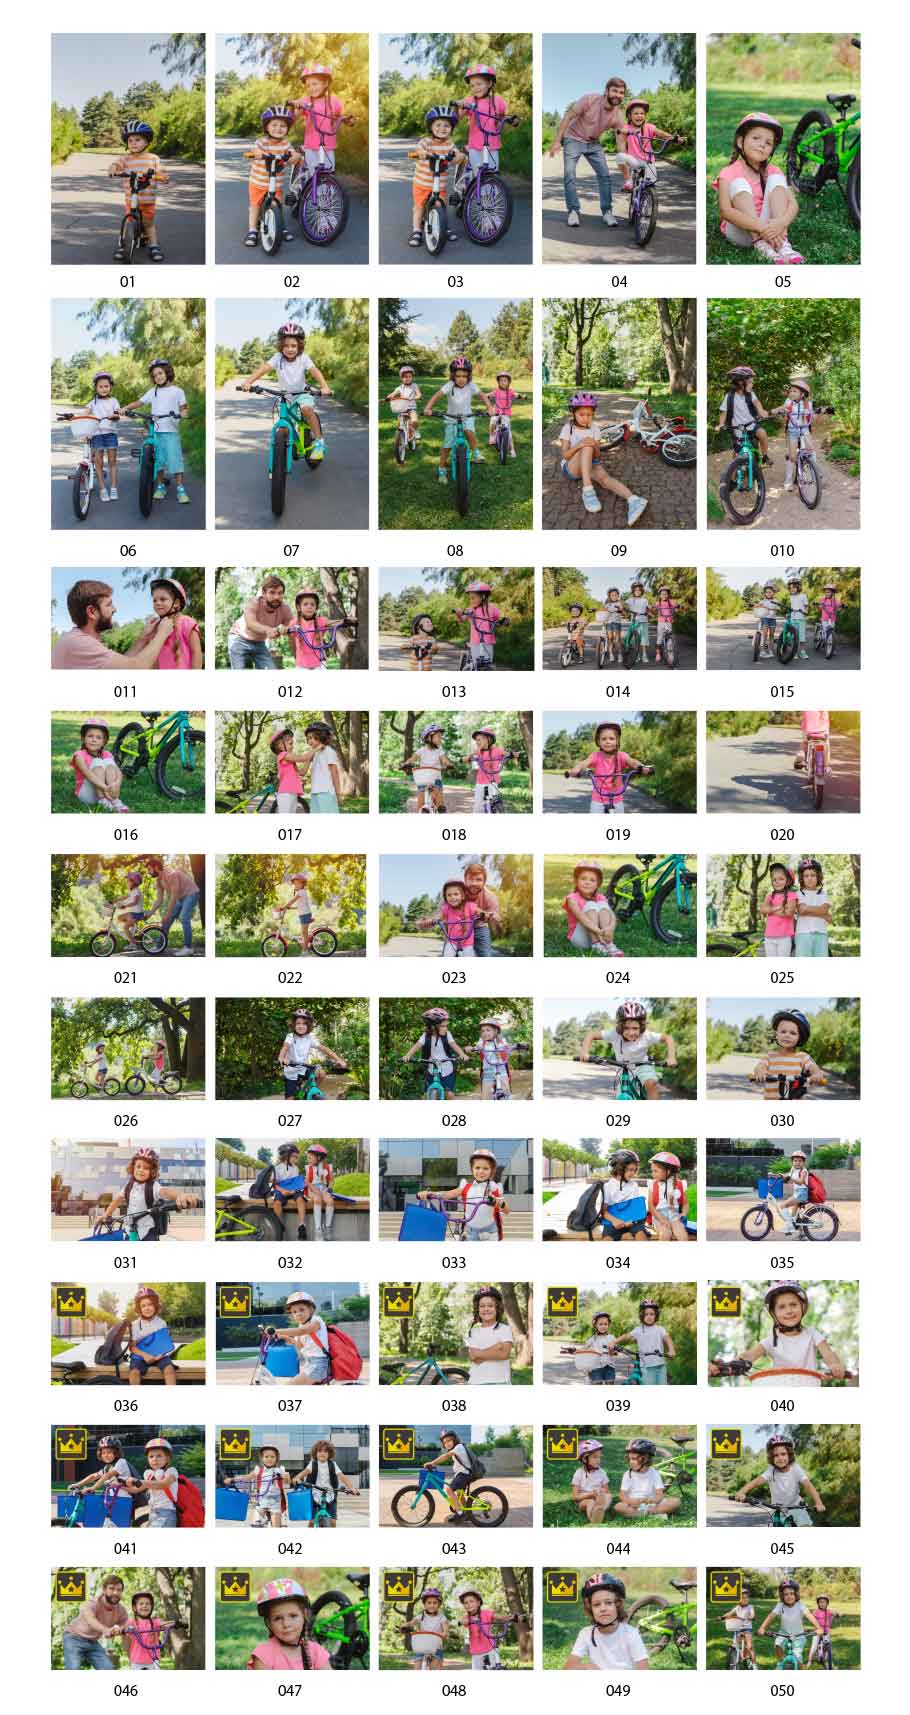 자전거를 타는 아이의 사진